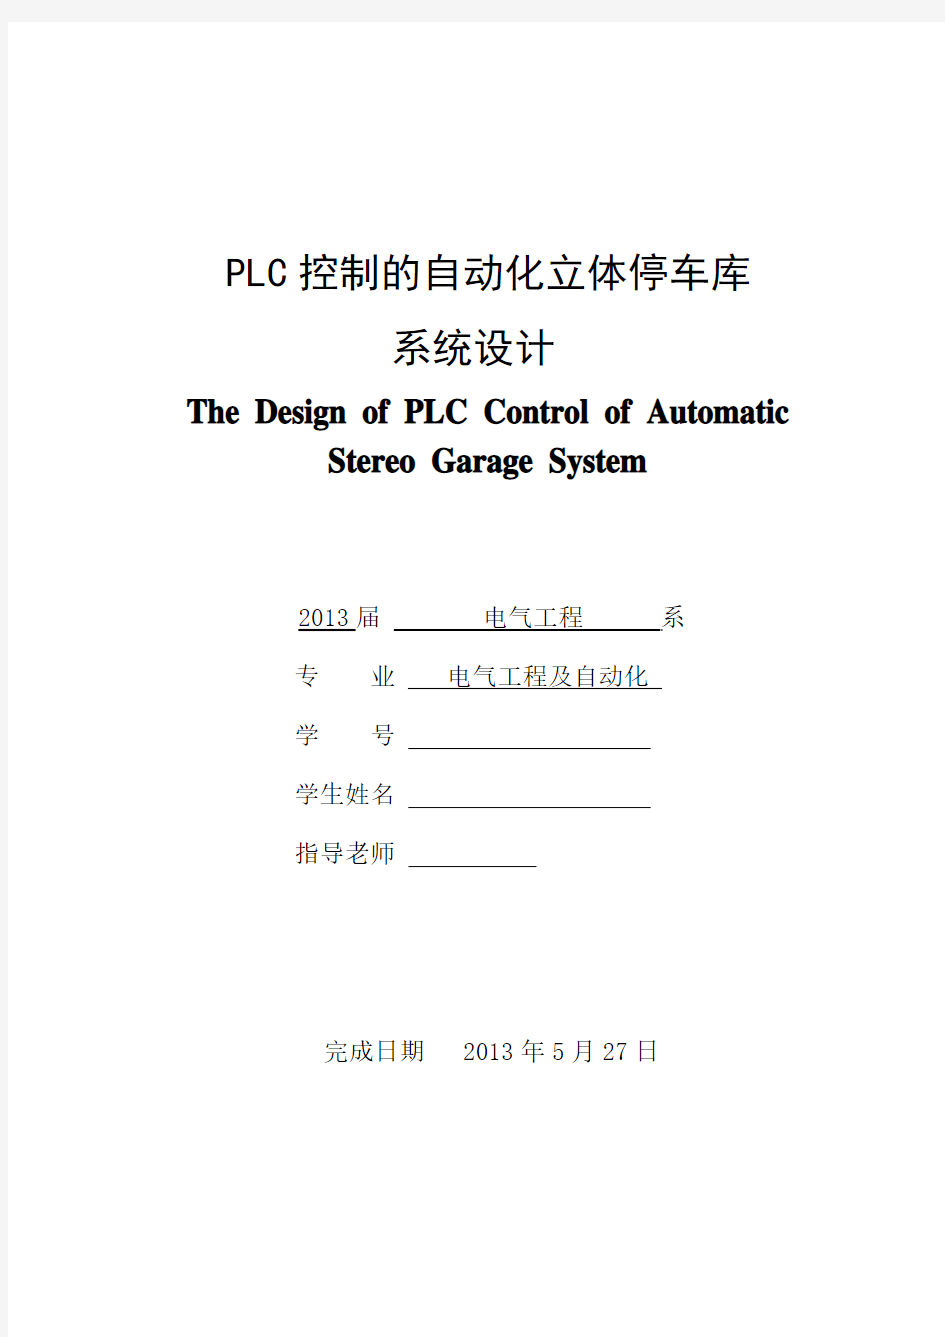 plc控制的立体化停车库系统毕业设计